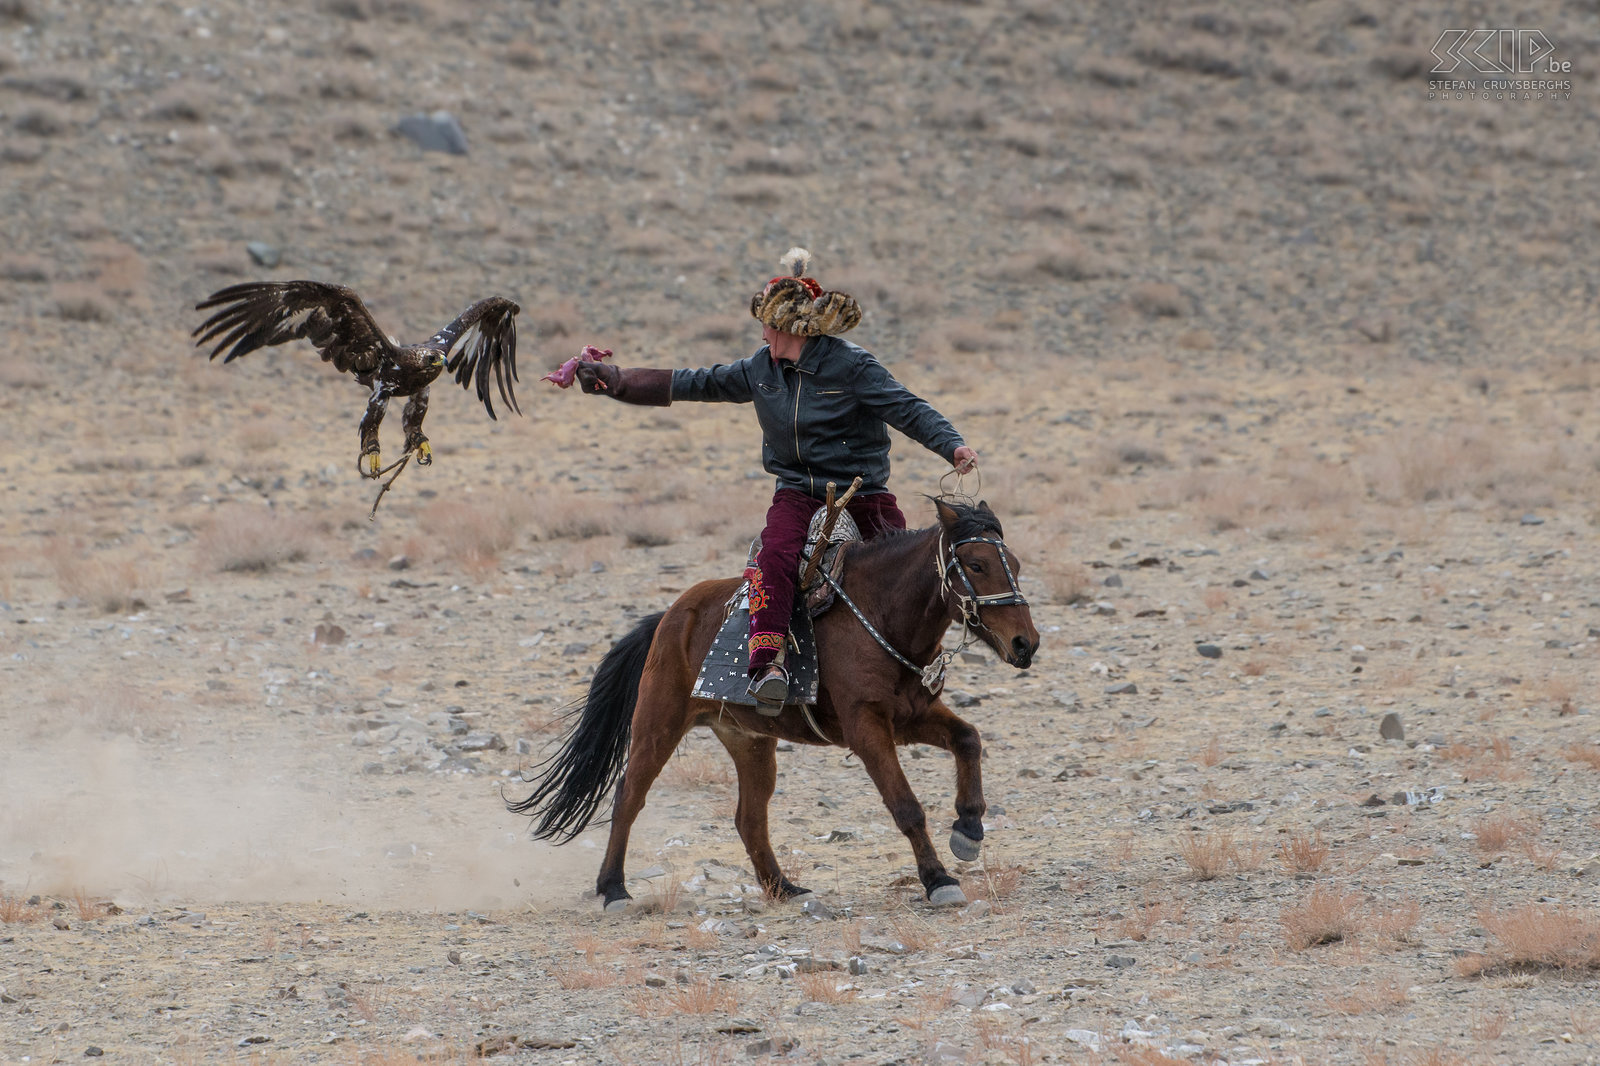 Ulgii - Golden Eagle Festival De Kazakse adelaarjagers rijden op kleine maar zeer snelle en behendige paarden die een zeer goede uithouding hebben. Stefan Cruysberghs